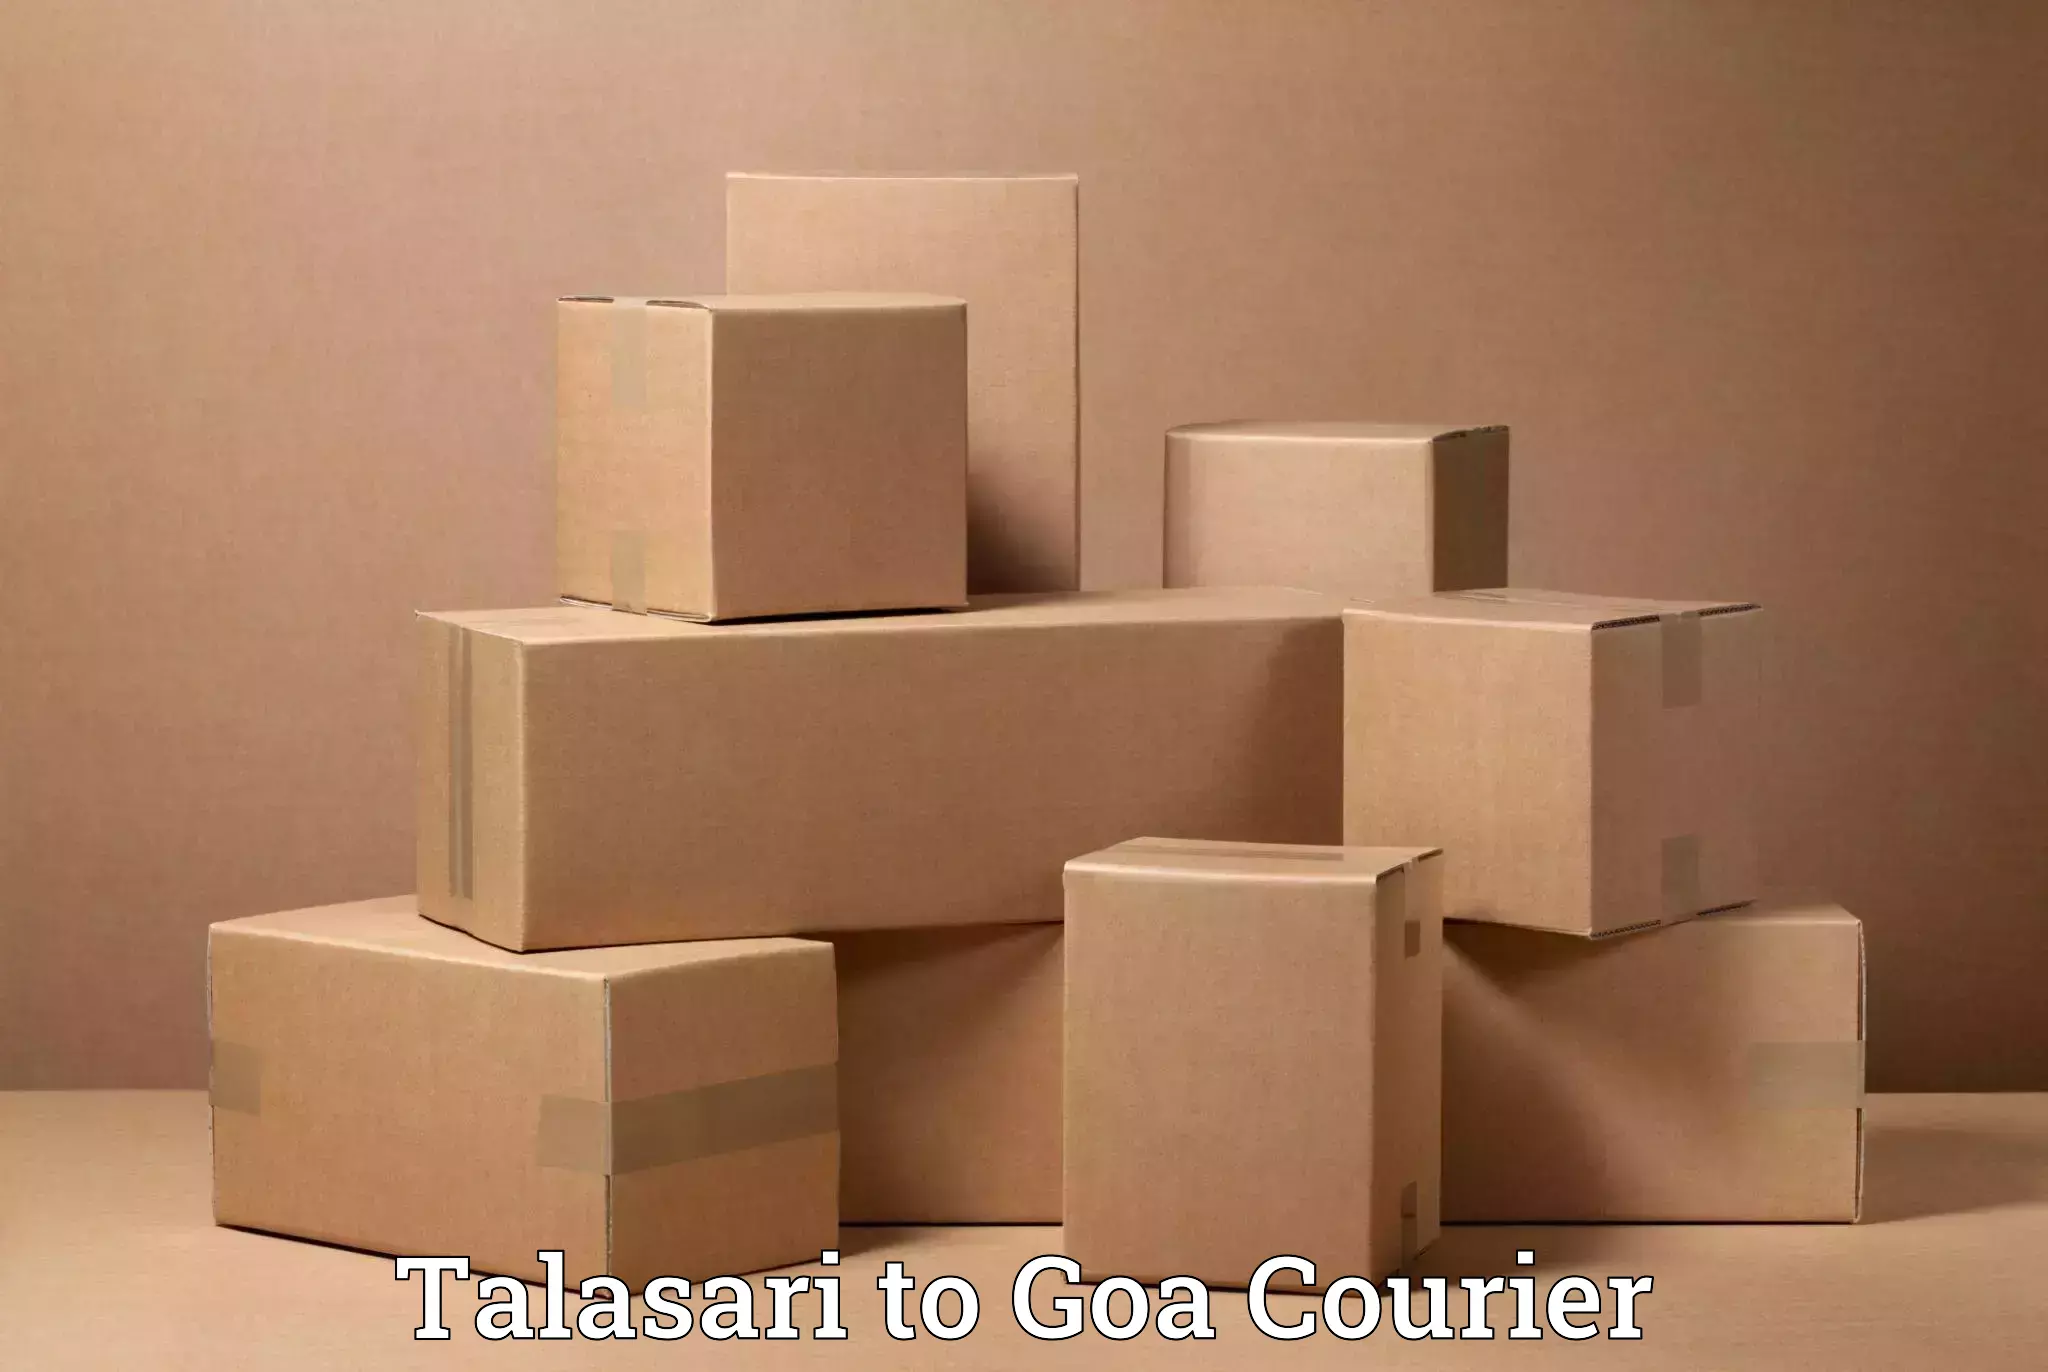 Efficient moving company Talasari to Goa